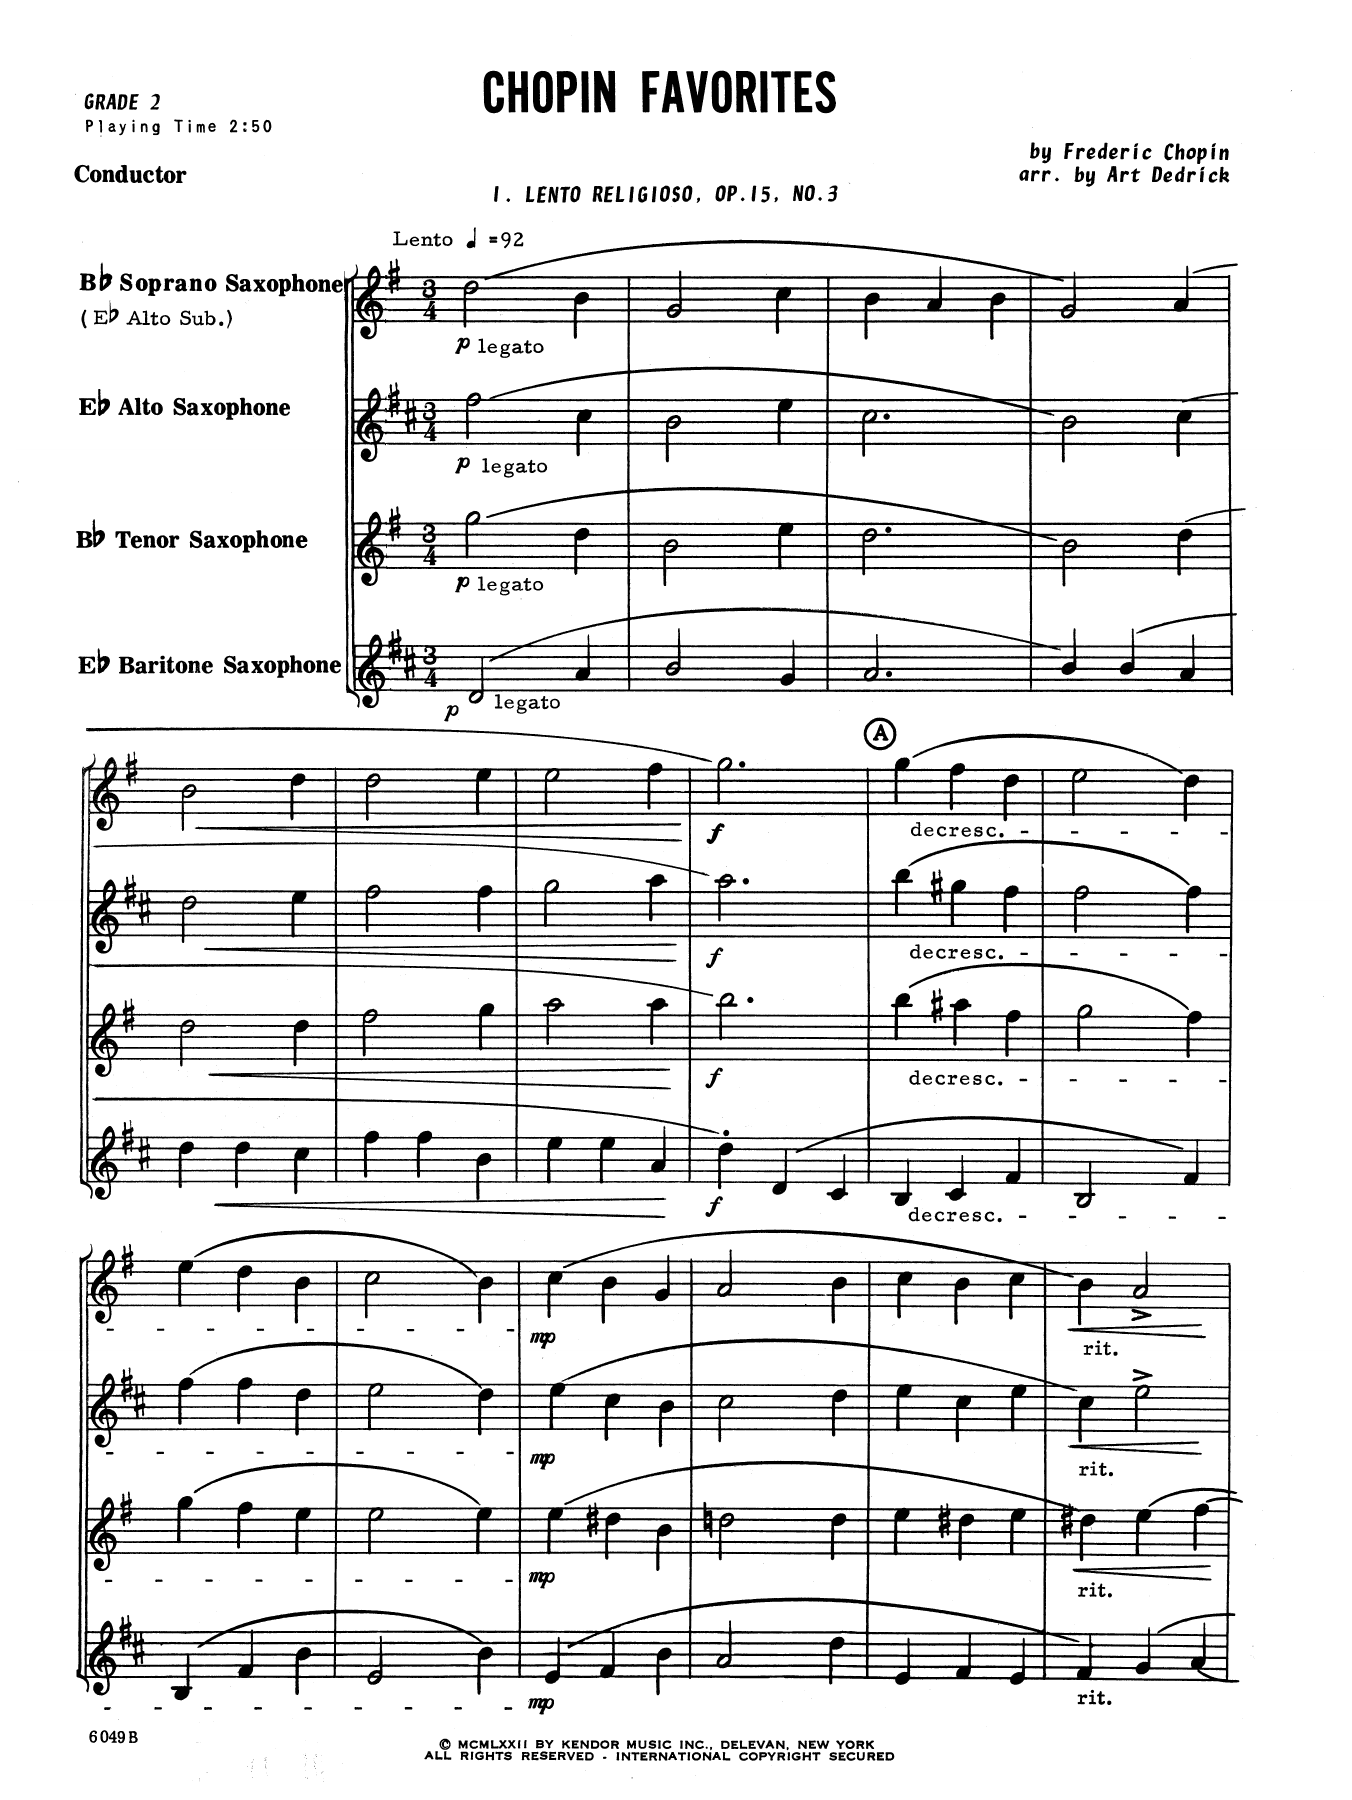 Download Art Dedrick Chopin Favorites - Full Score Sheet Music